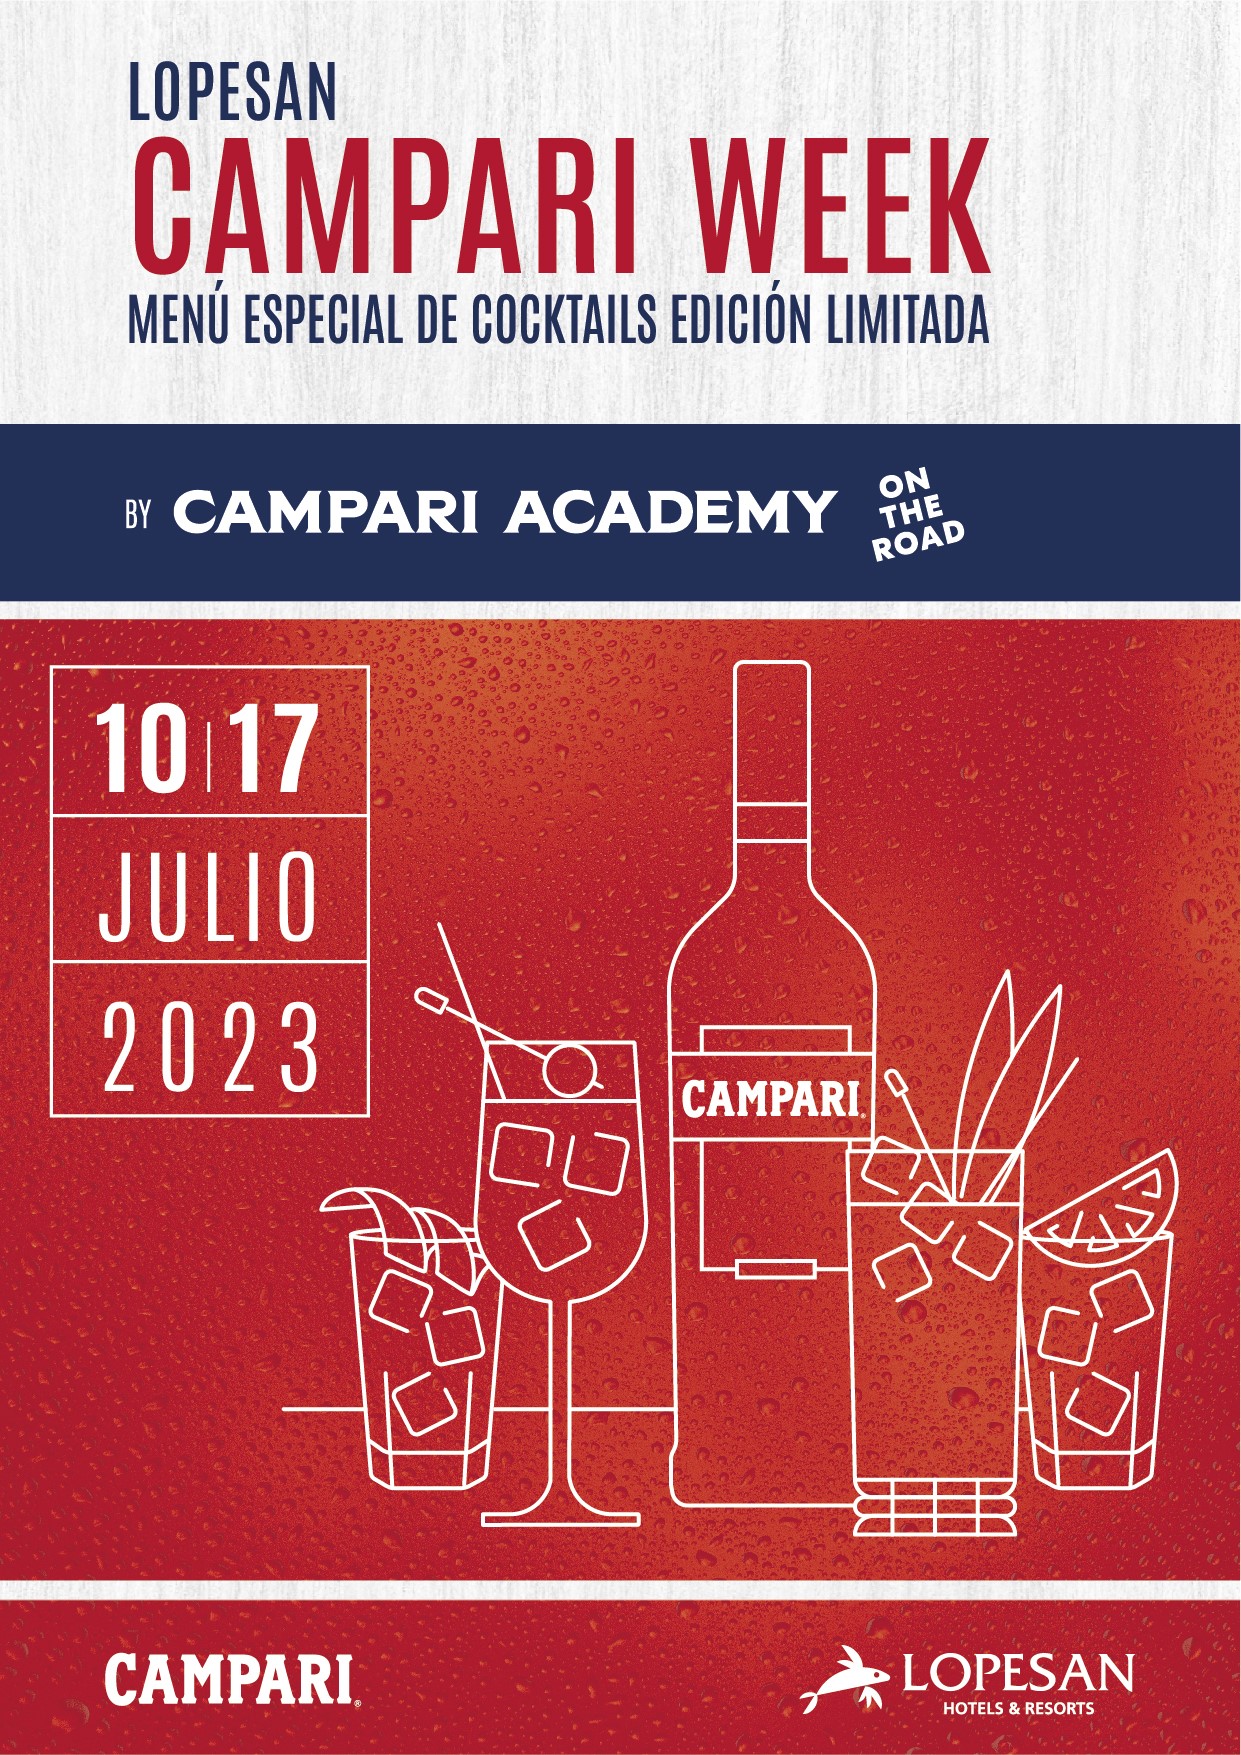 Lopesan Campari Week/ canariasnoticias.es